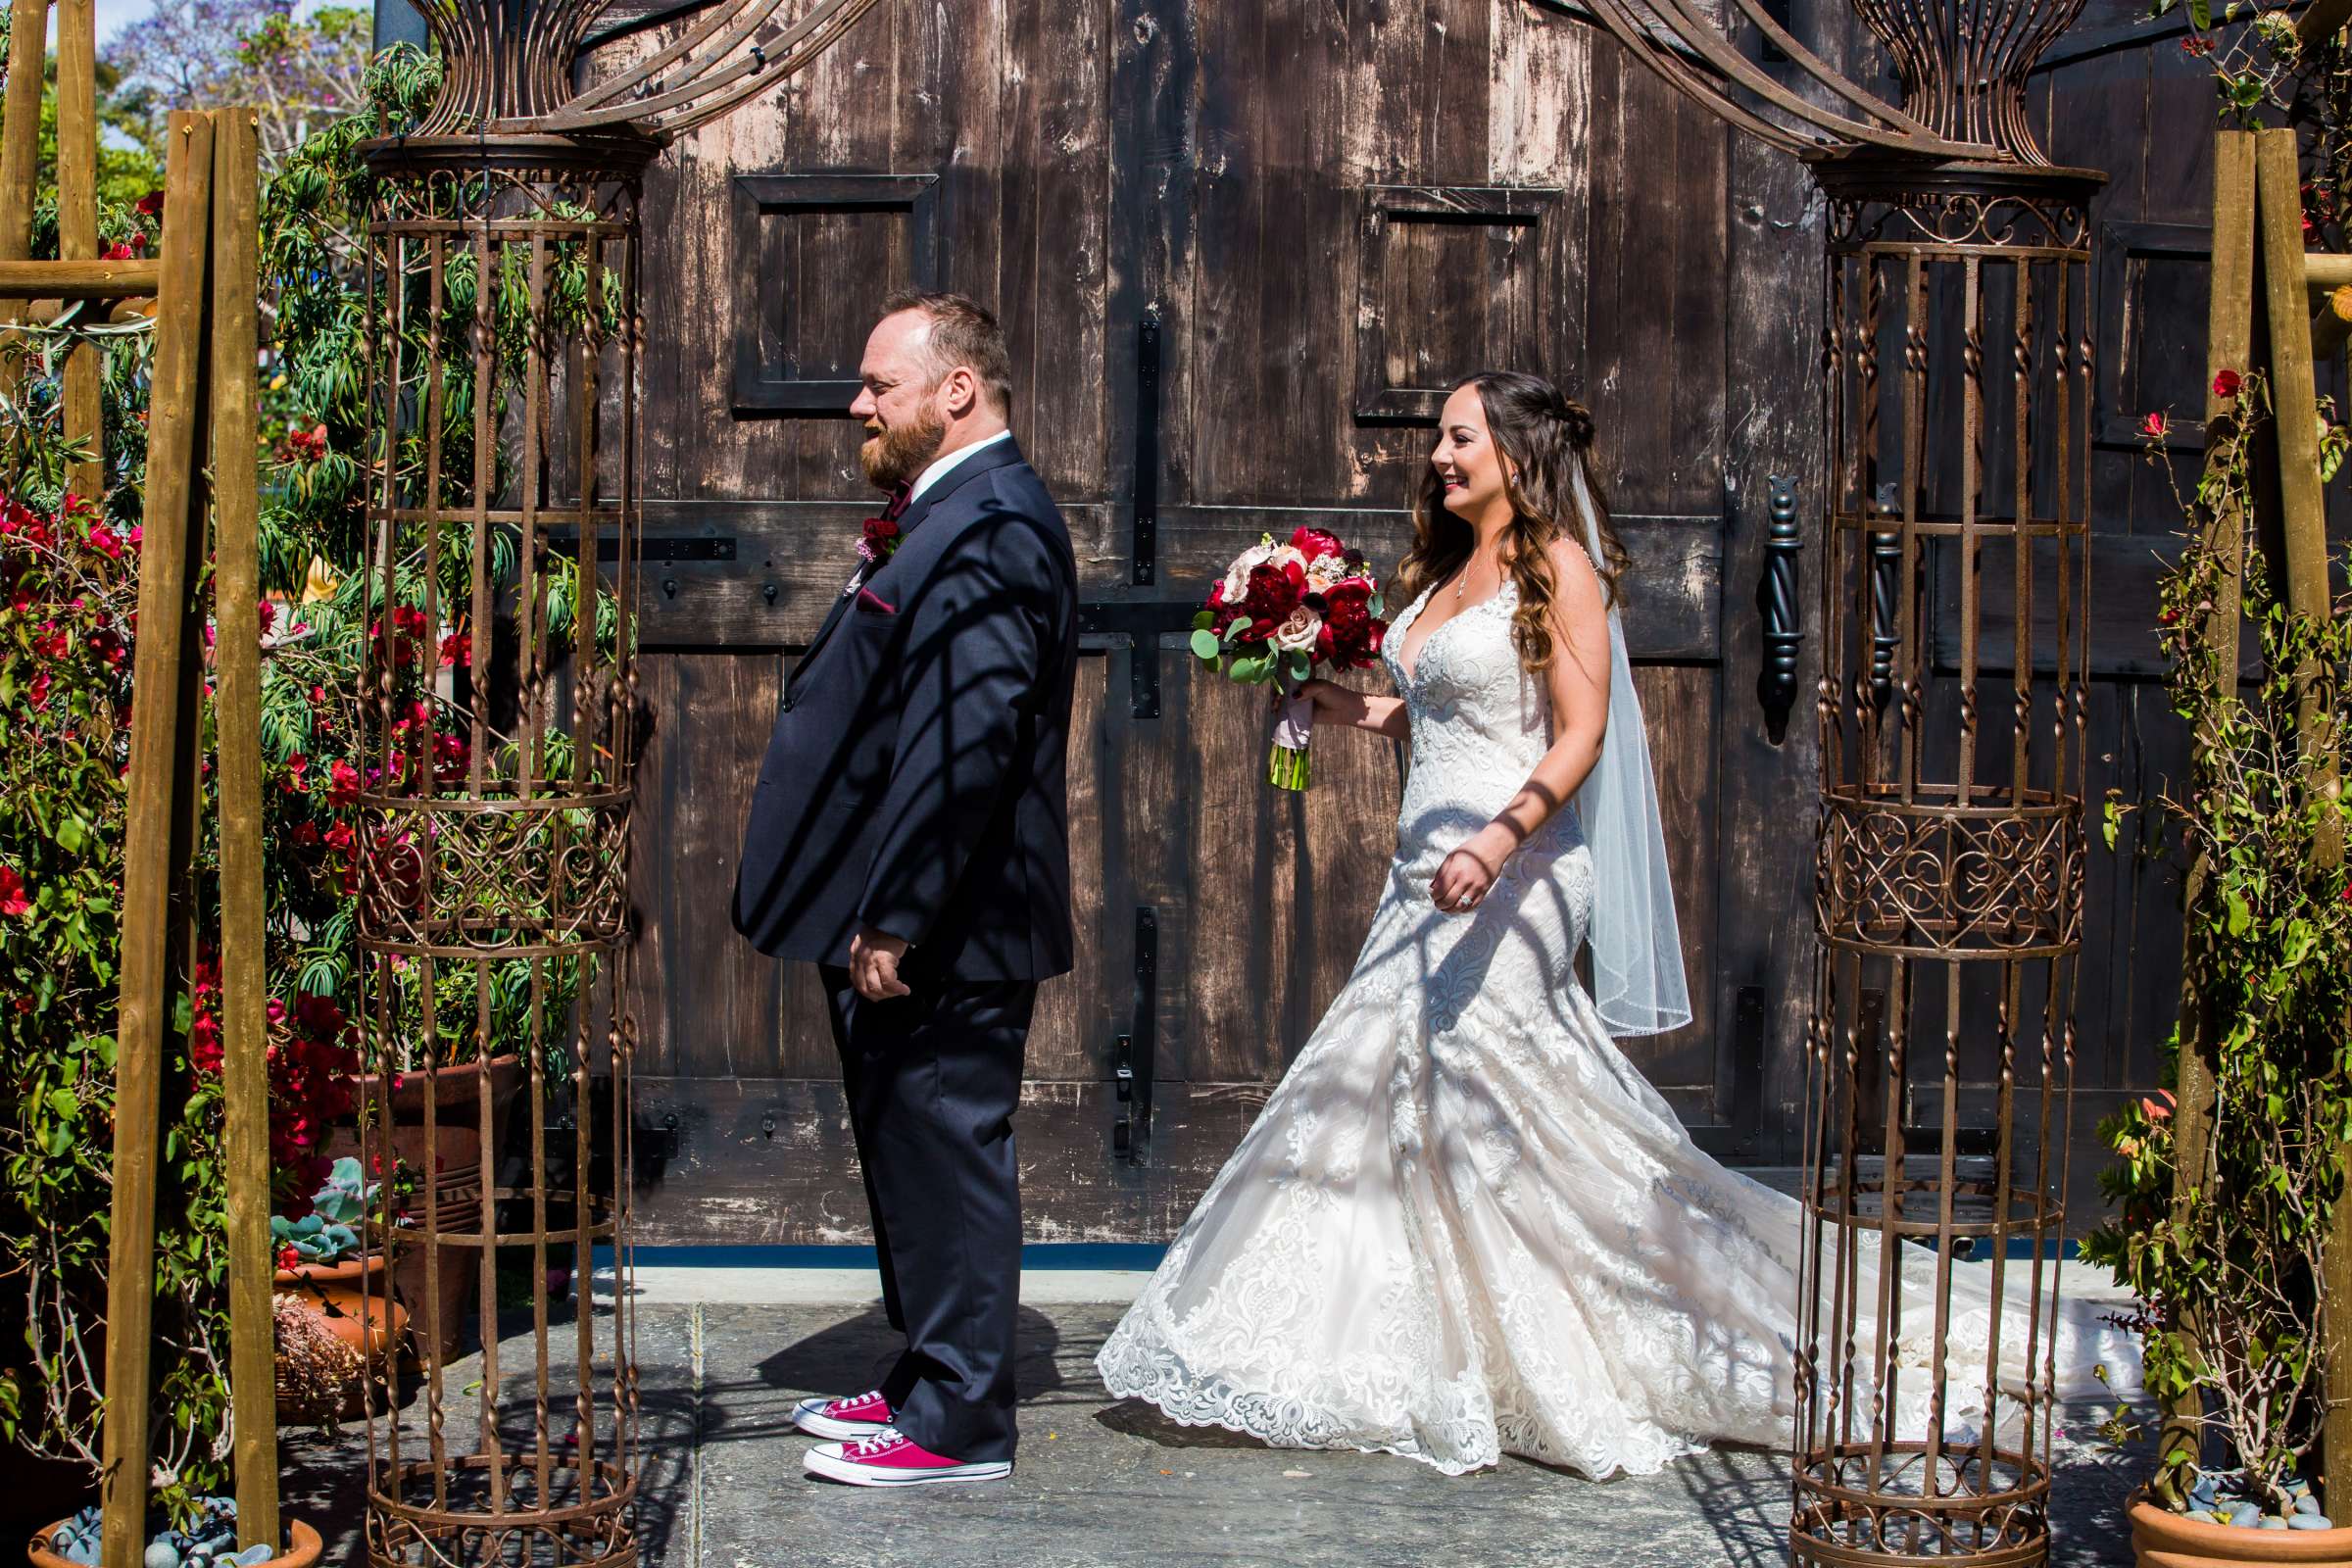 Cuvier Club Wedding, Rachel and Shawn Wedding Photo #46 by True Photography